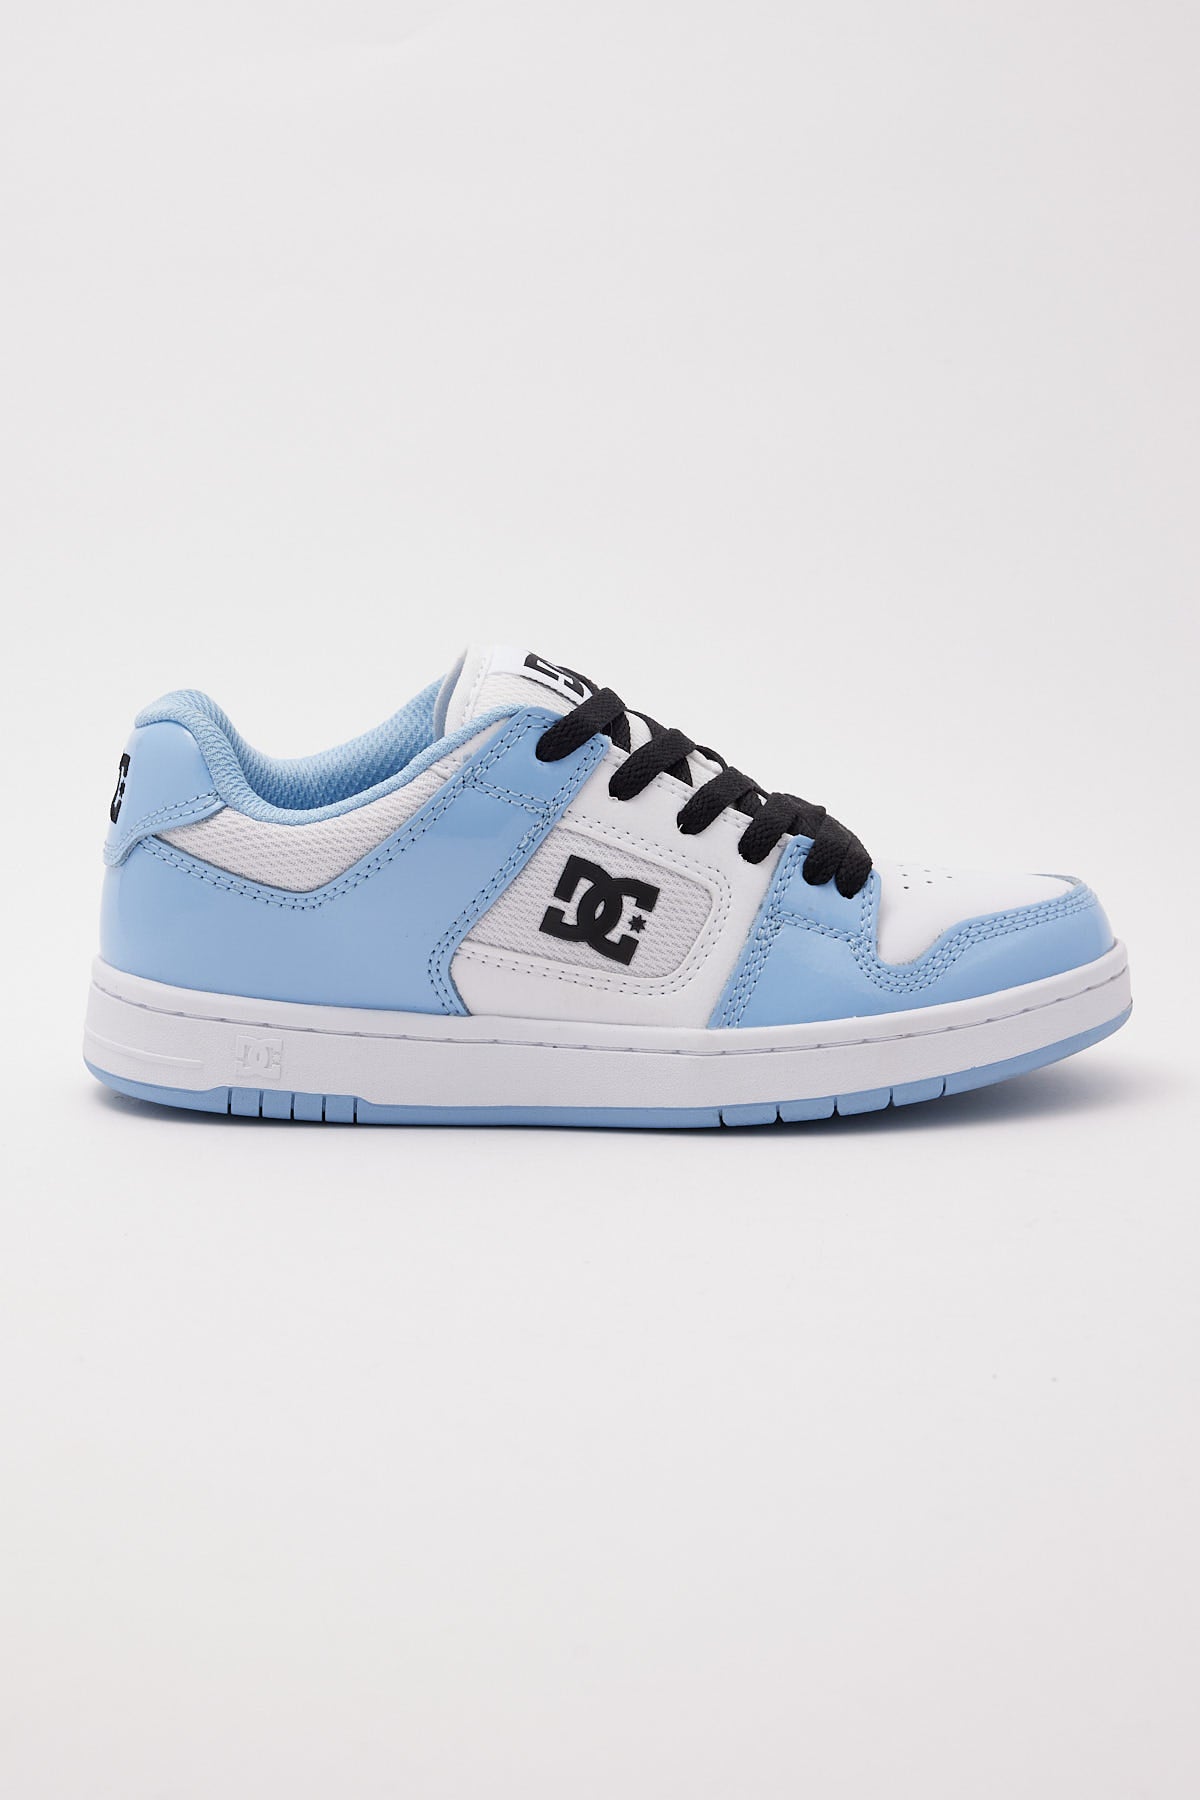 Dc Shoes Manteca 4 Blue / White